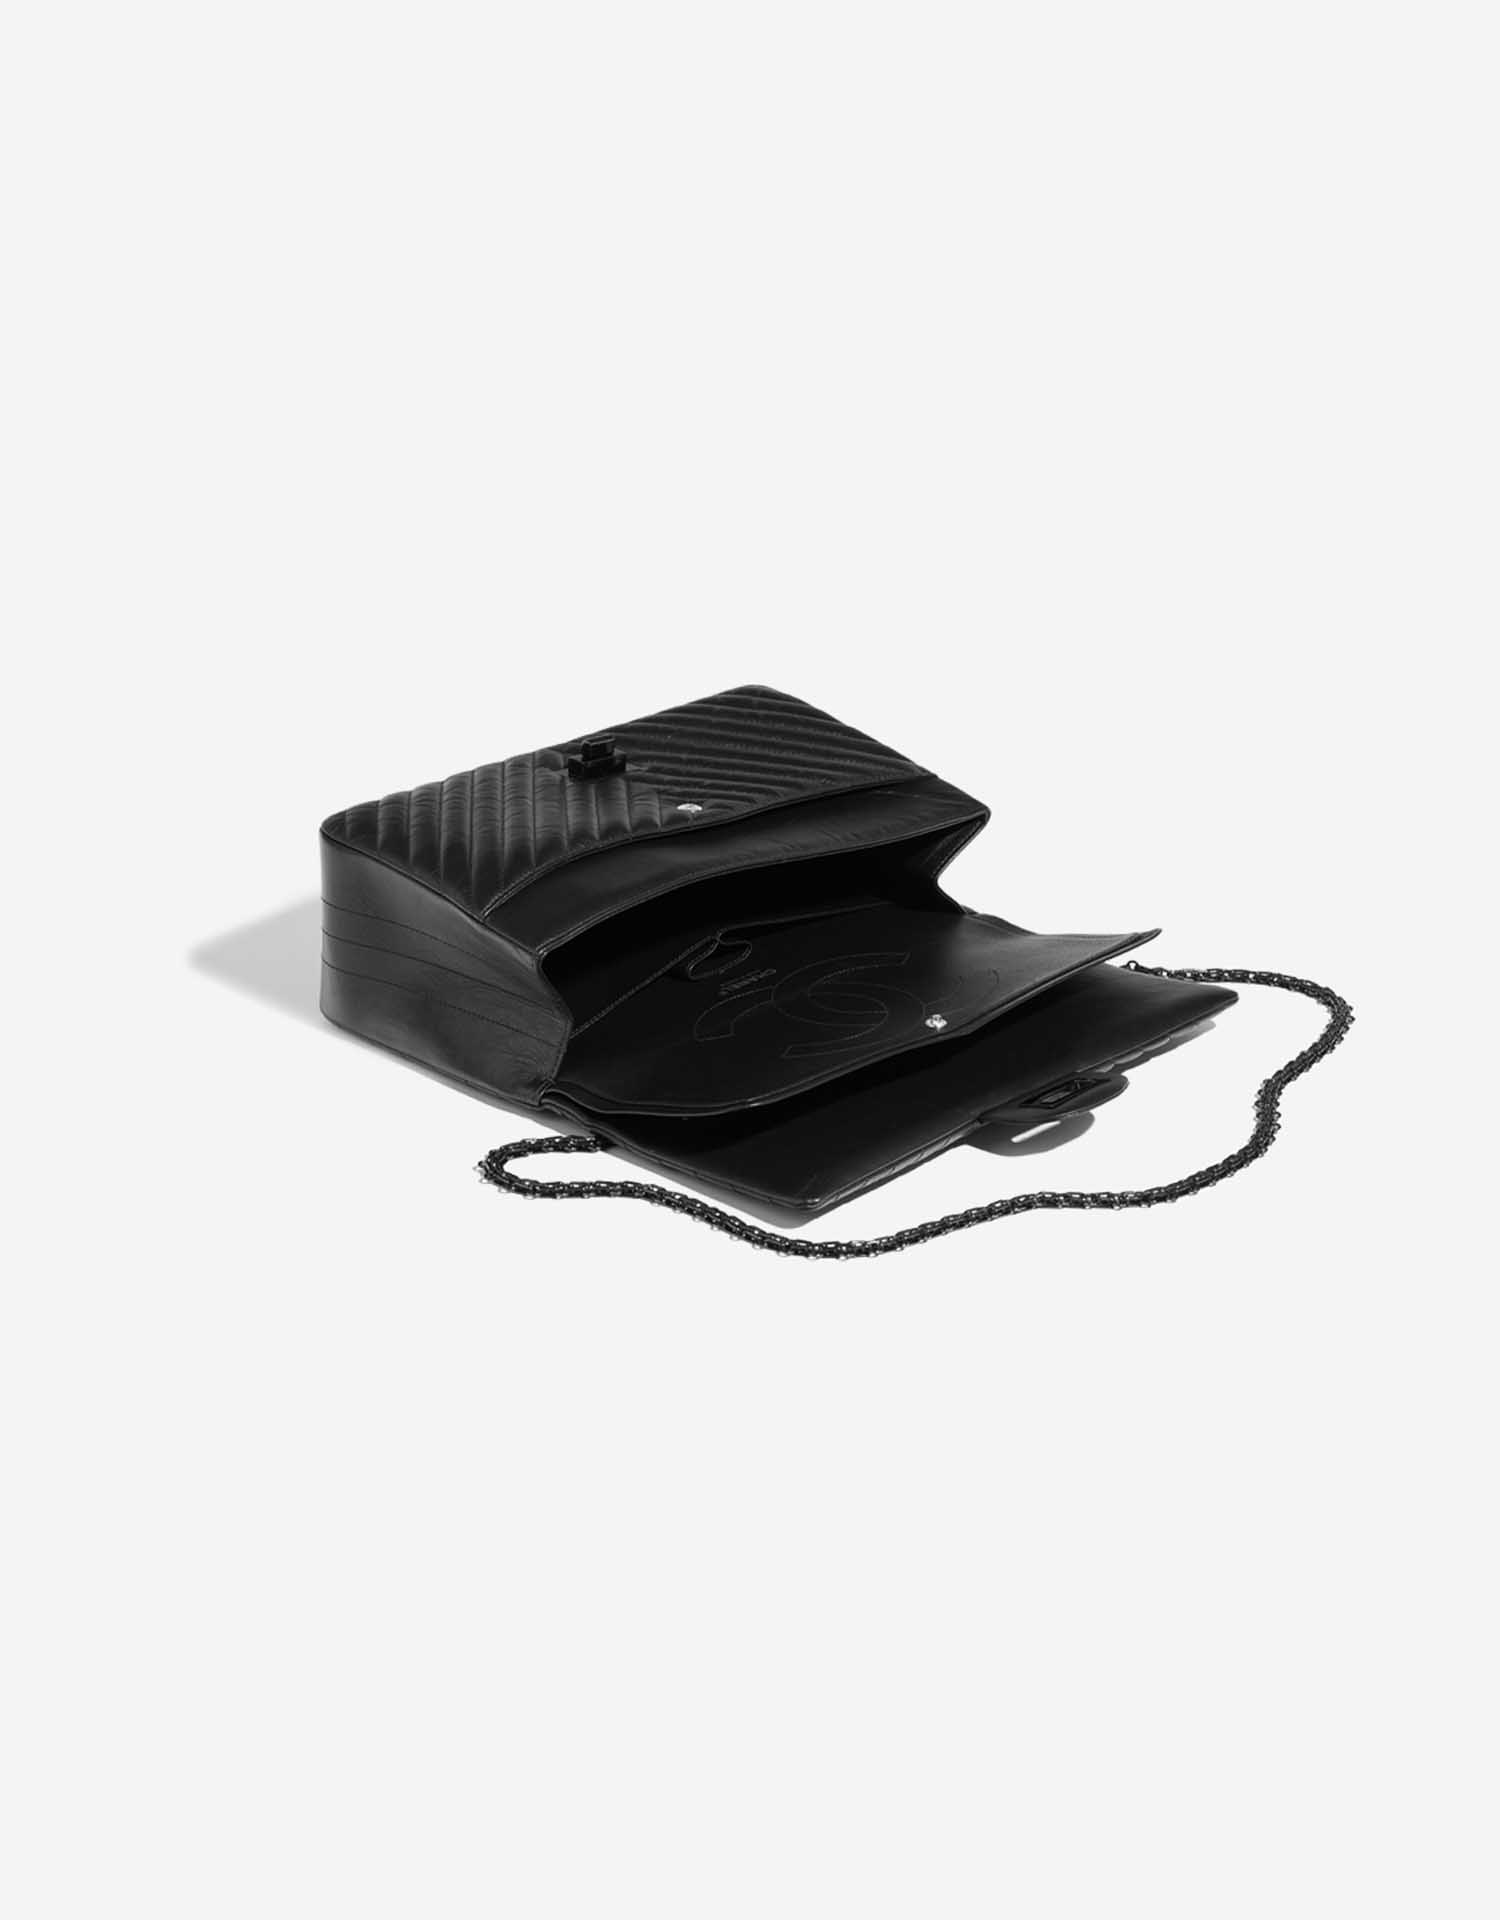 Sac Chanel d'occasion 2.55 Reissue 227 Calf So Black Black Inside | Vendez votre sac de créateur sur Saclab.com